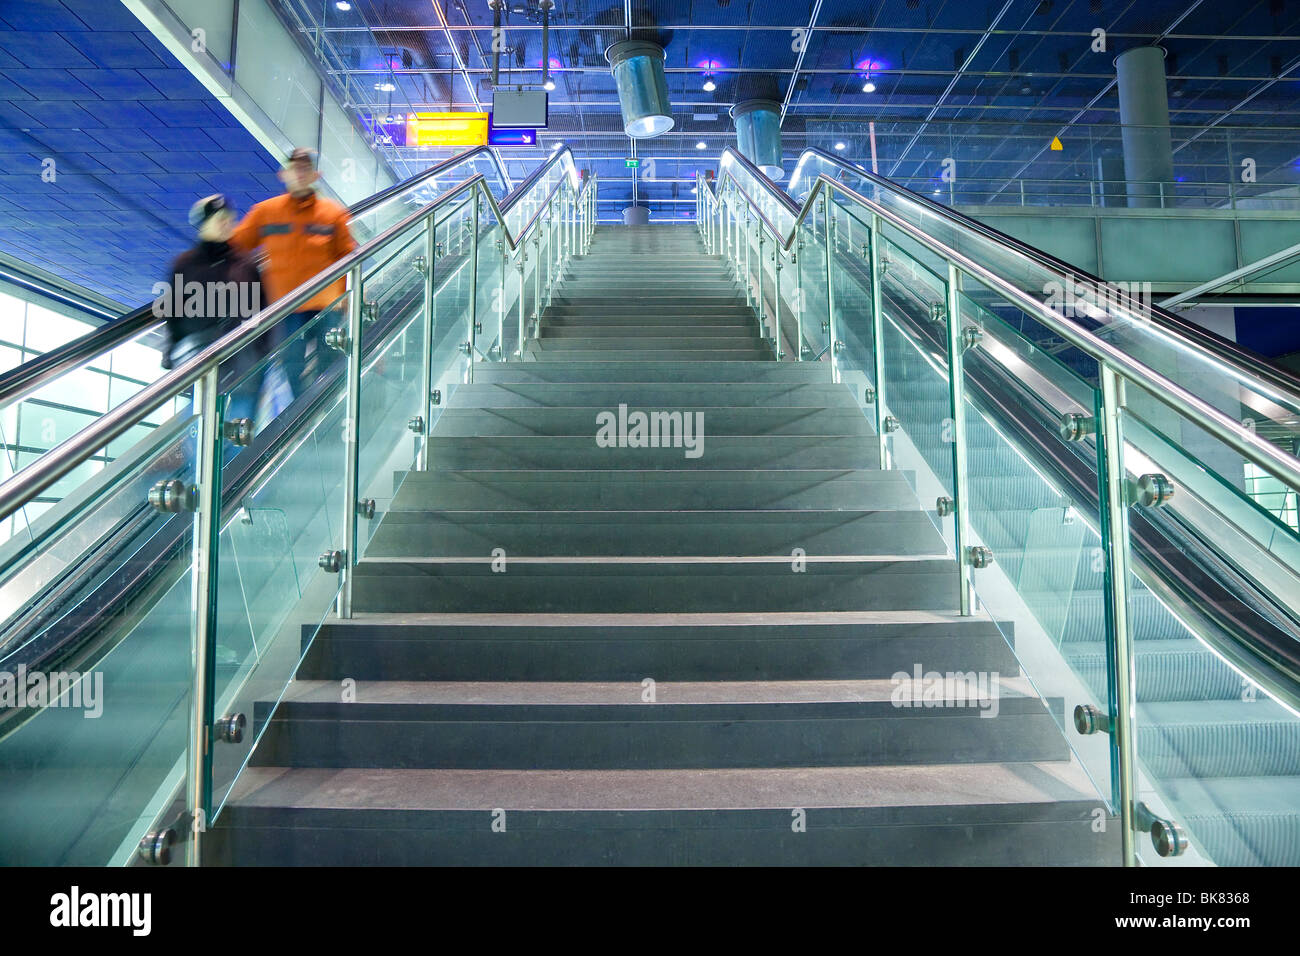 L'Europa, Germania, Berlino, stazione ferroviaria moderna - ascensori e scale che conducono alla piattaforma Foto Stock